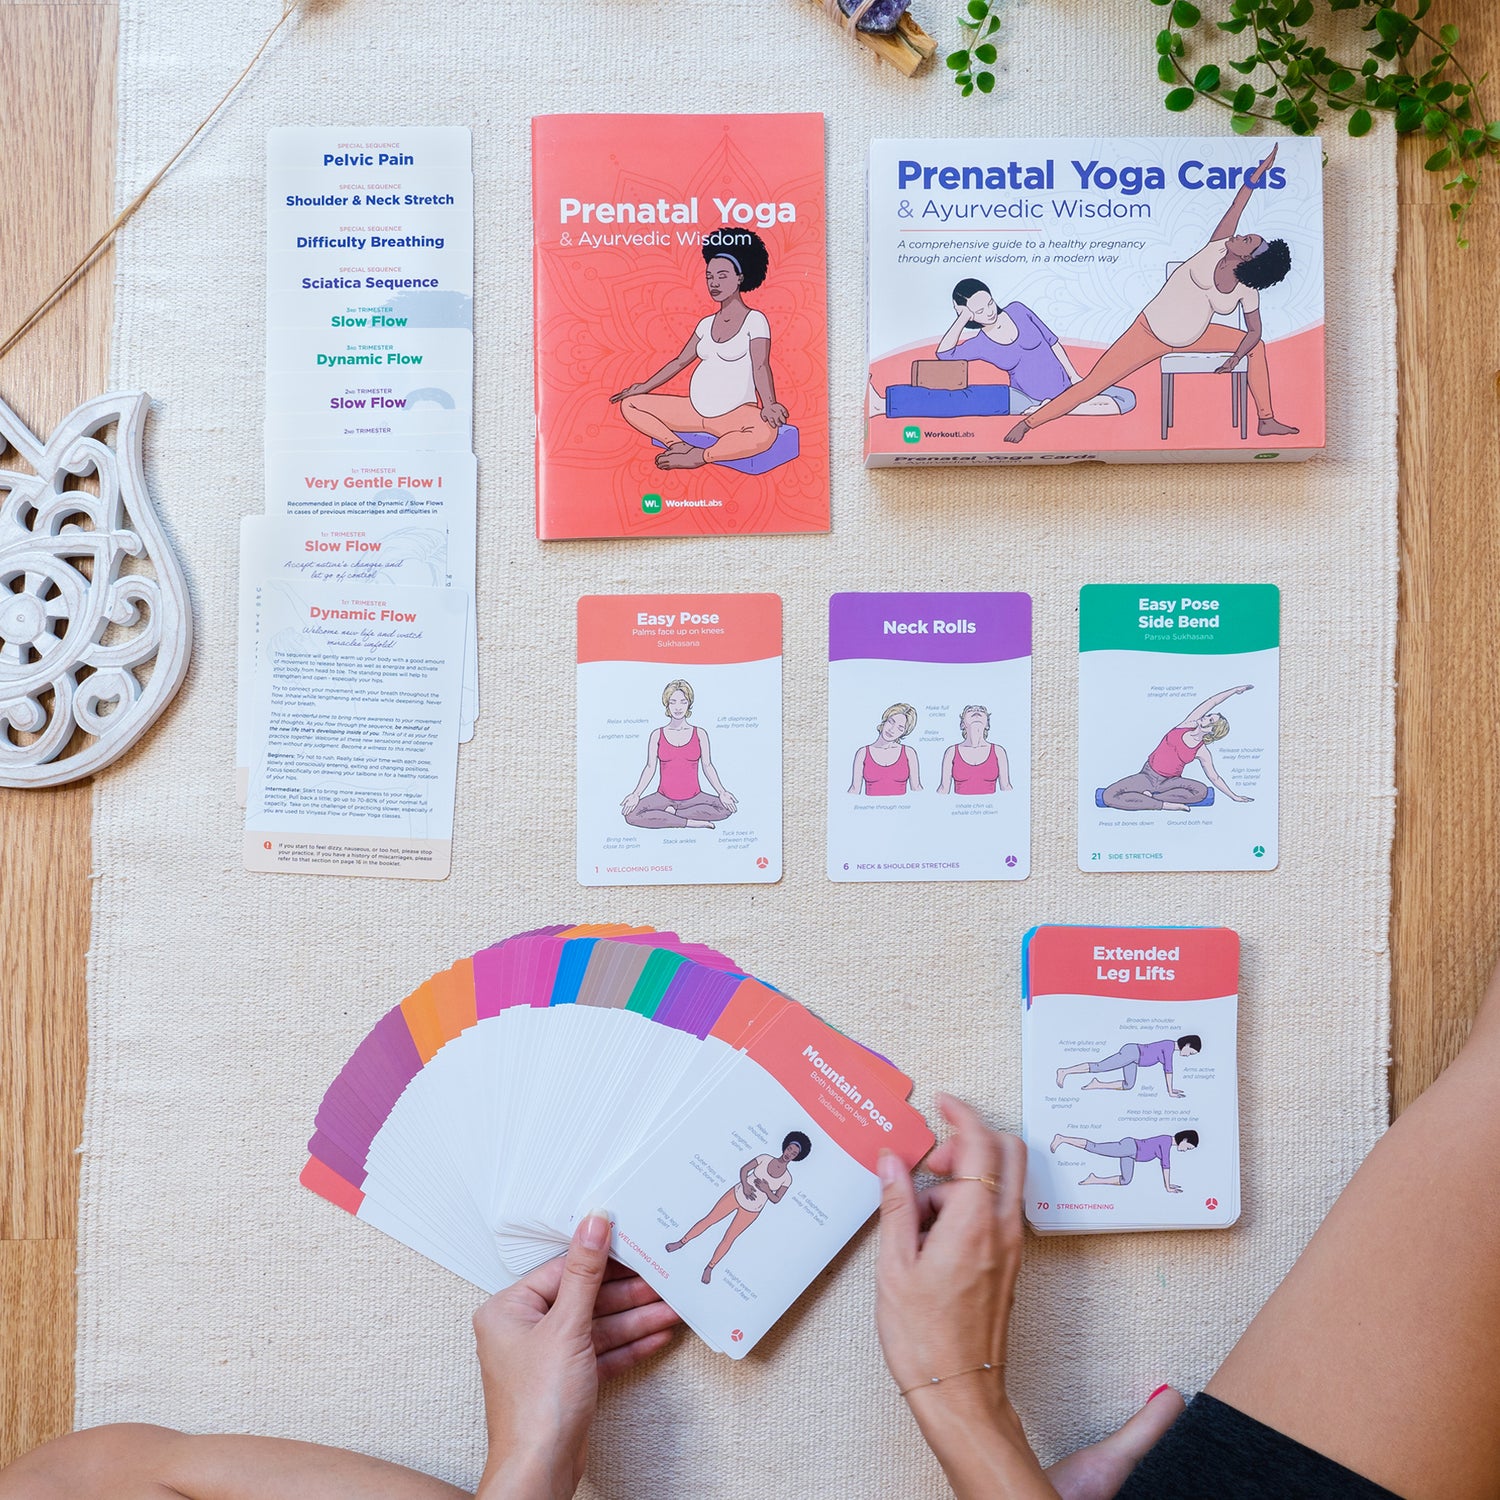  WorkoutLabs Prenatal Yoga & Ayurveda Cards – Healthy